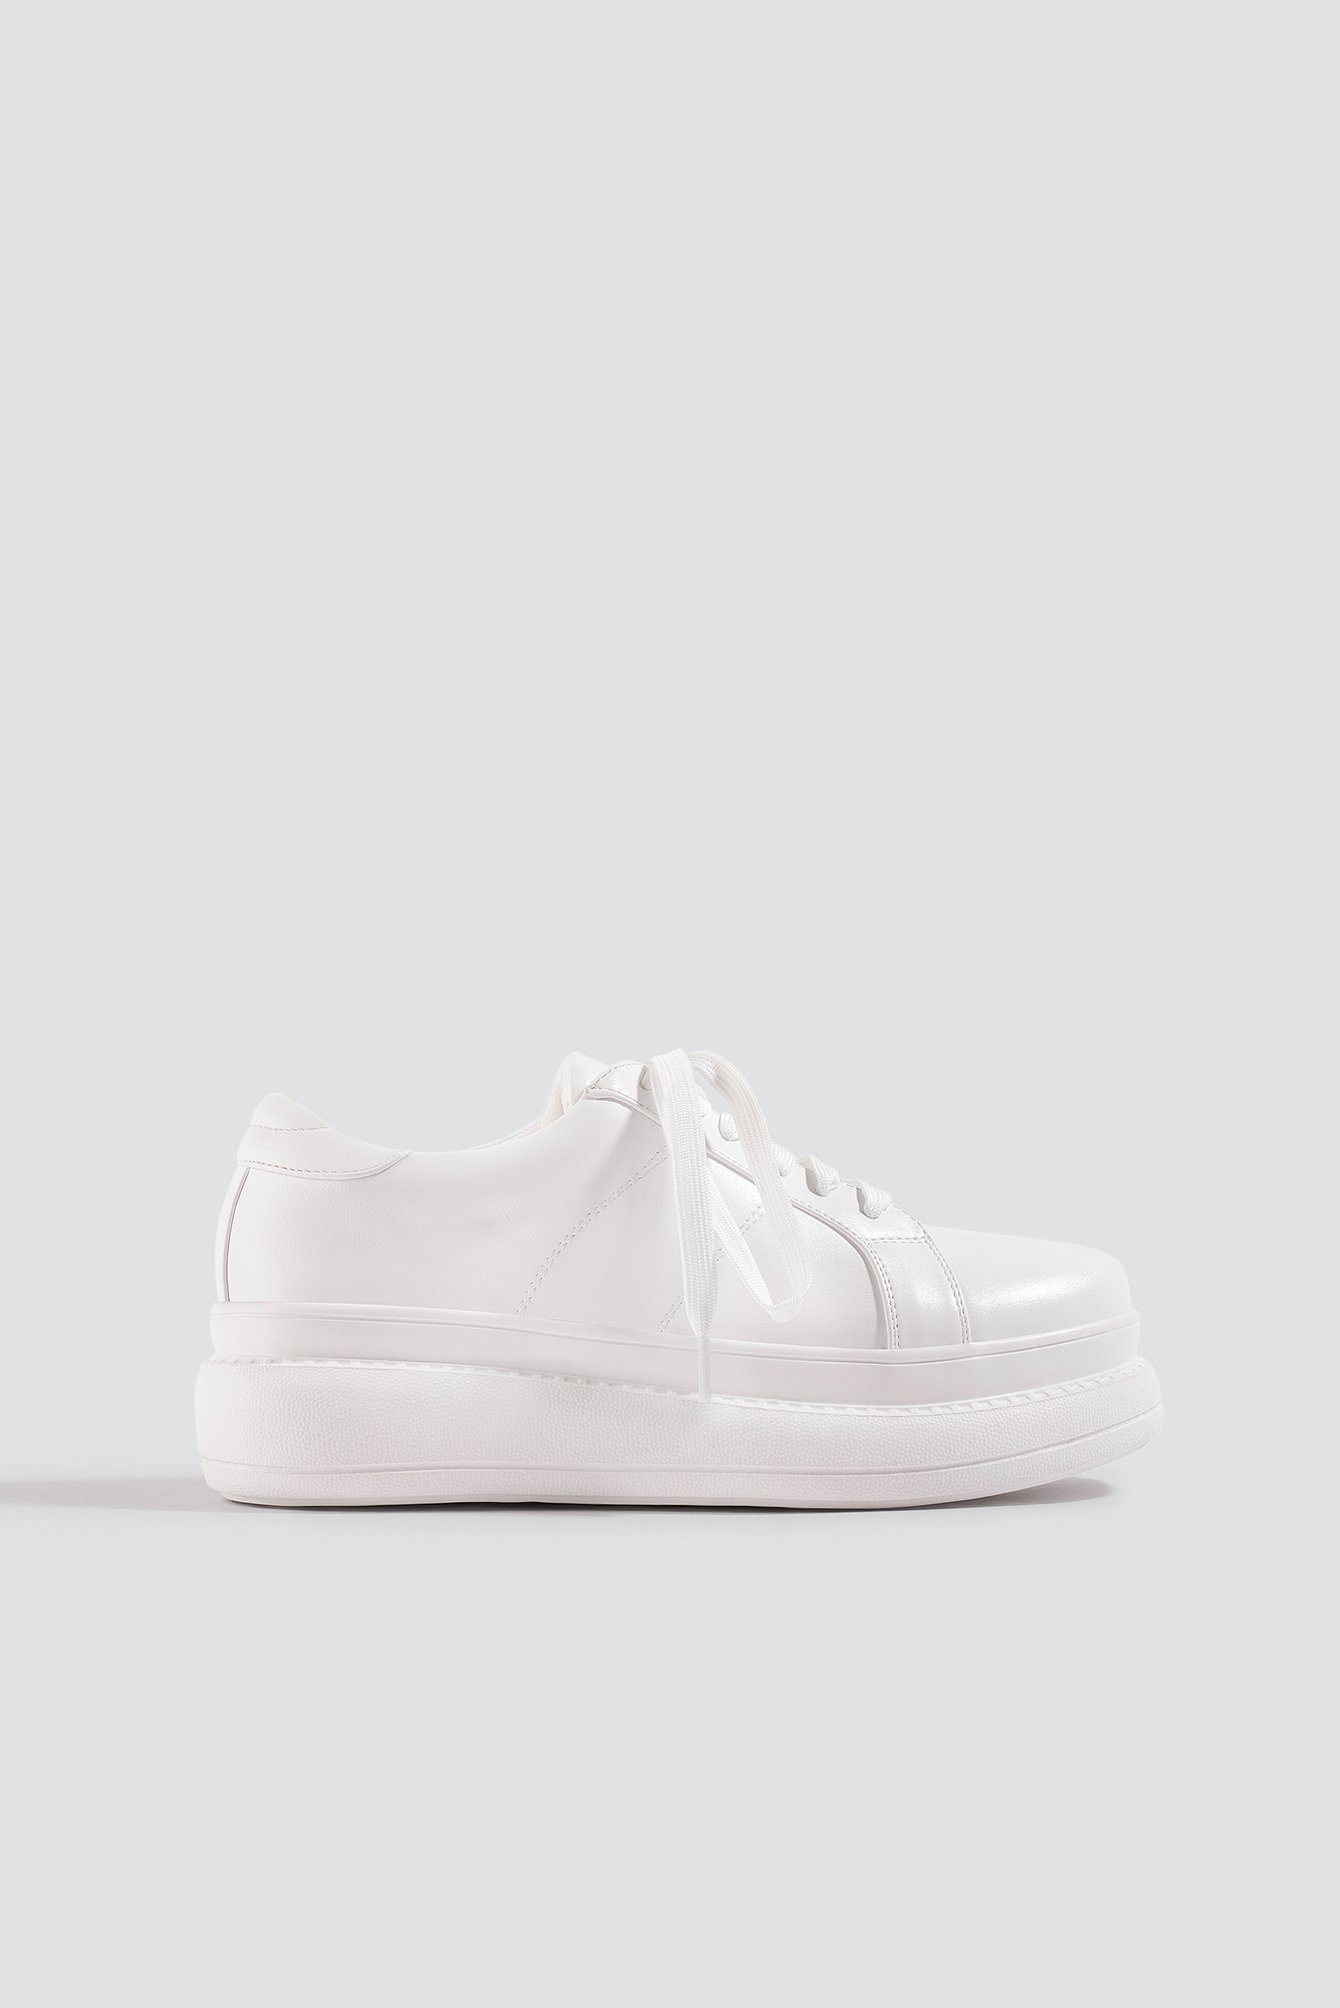 Céline & Talisa x NA-KD High Sole Sneakers - White